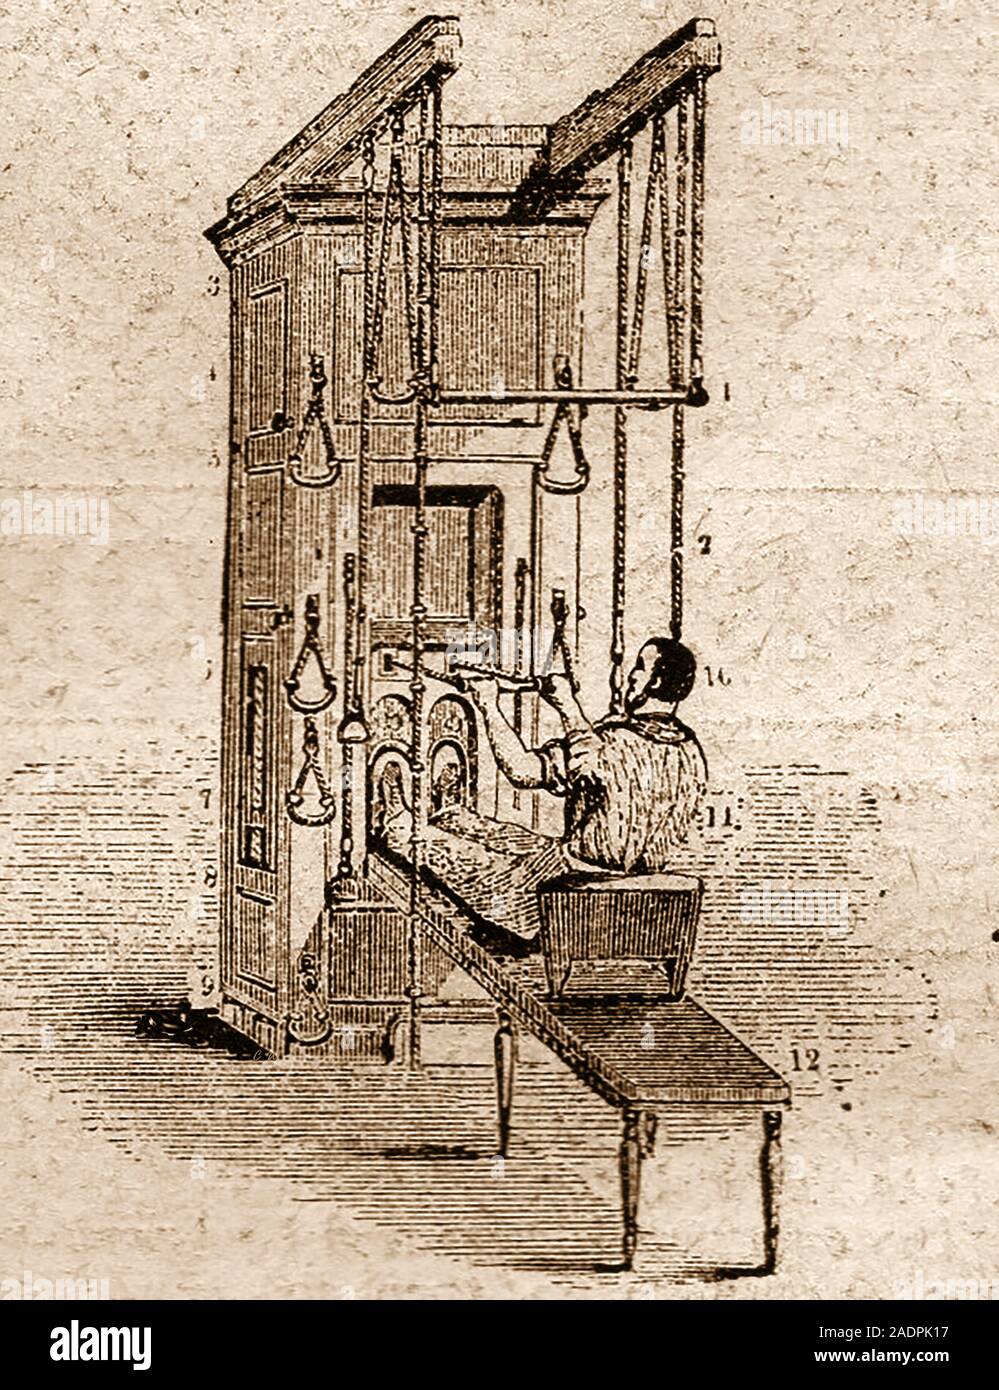 Seltsam frühen Erfindungen - eine hölzerne Viktorianischen übung oder fit halten. Obwohl nie kommerziell hergestellten die Geburt der modernen kompaktere Modelle geben. Stockfoto